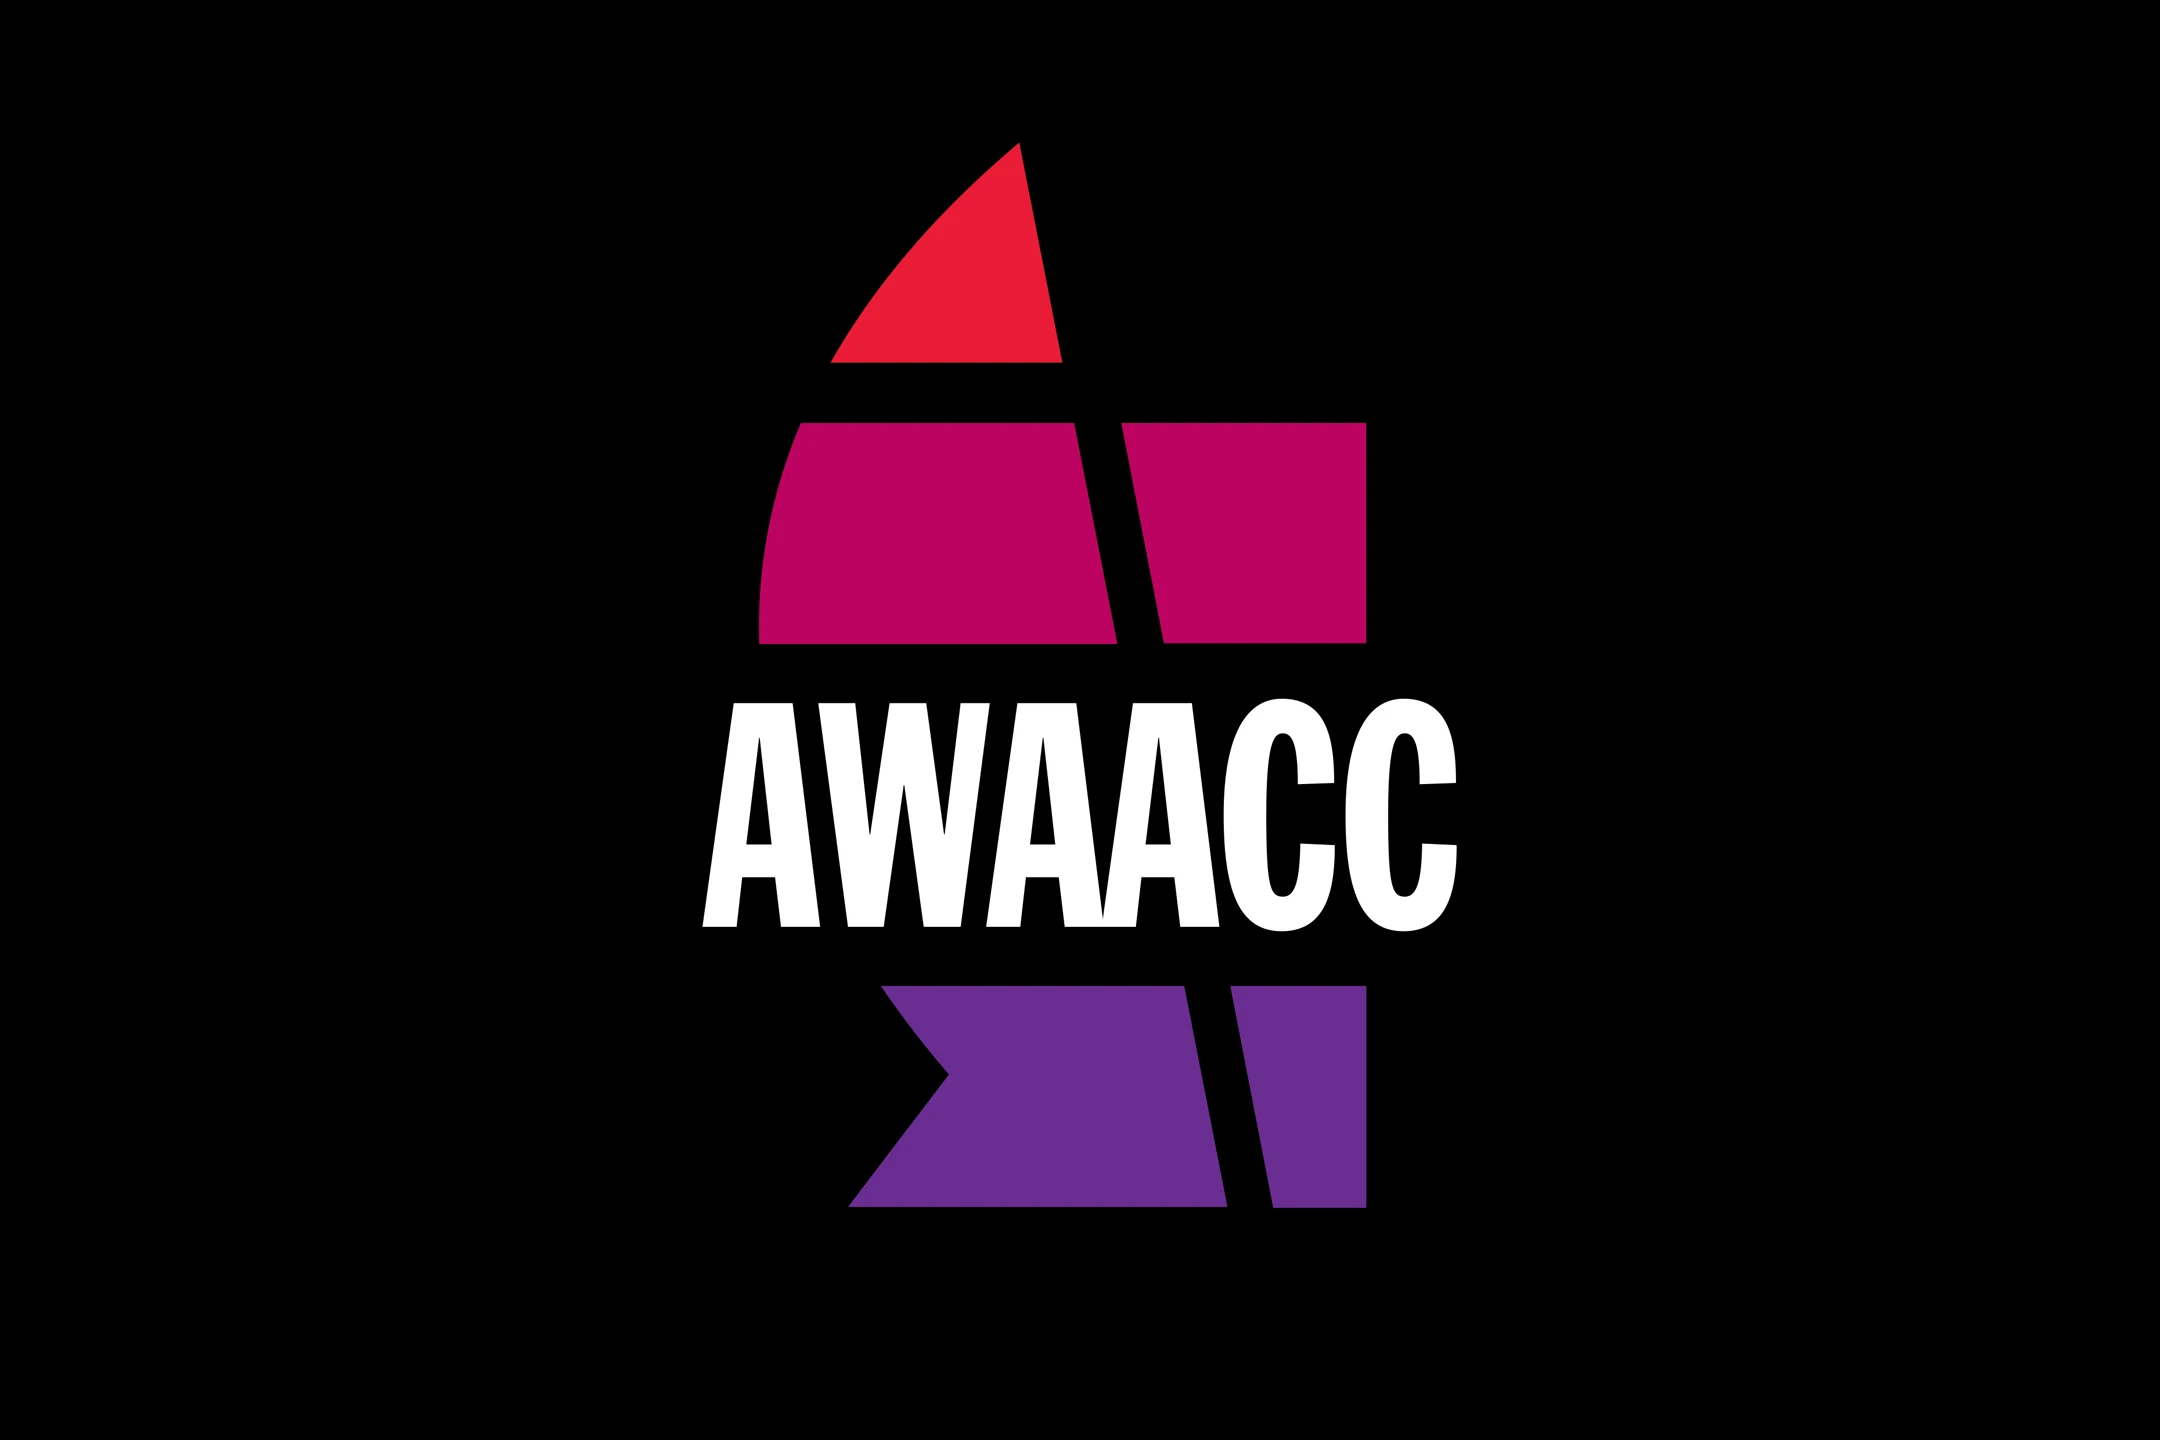 AWAACC Event